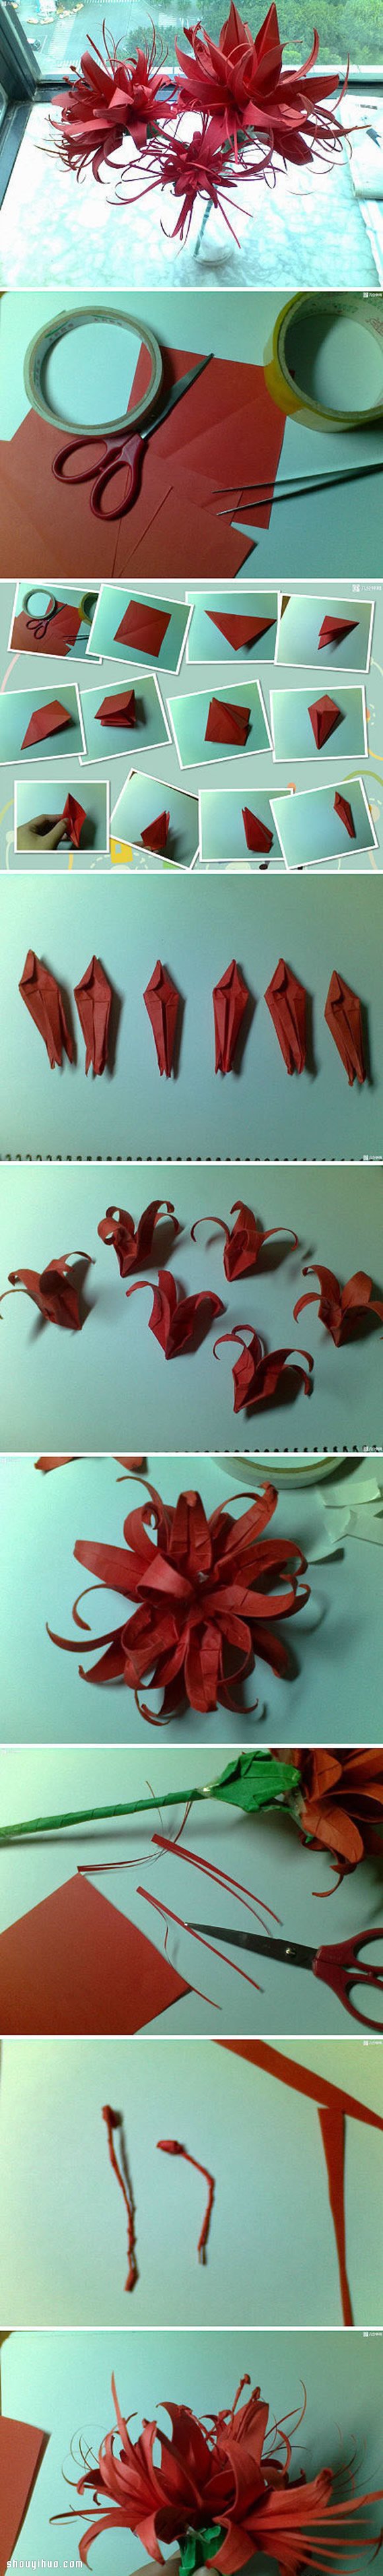 盛开热带花卉的折法图解 手工折纸漂亮花朵